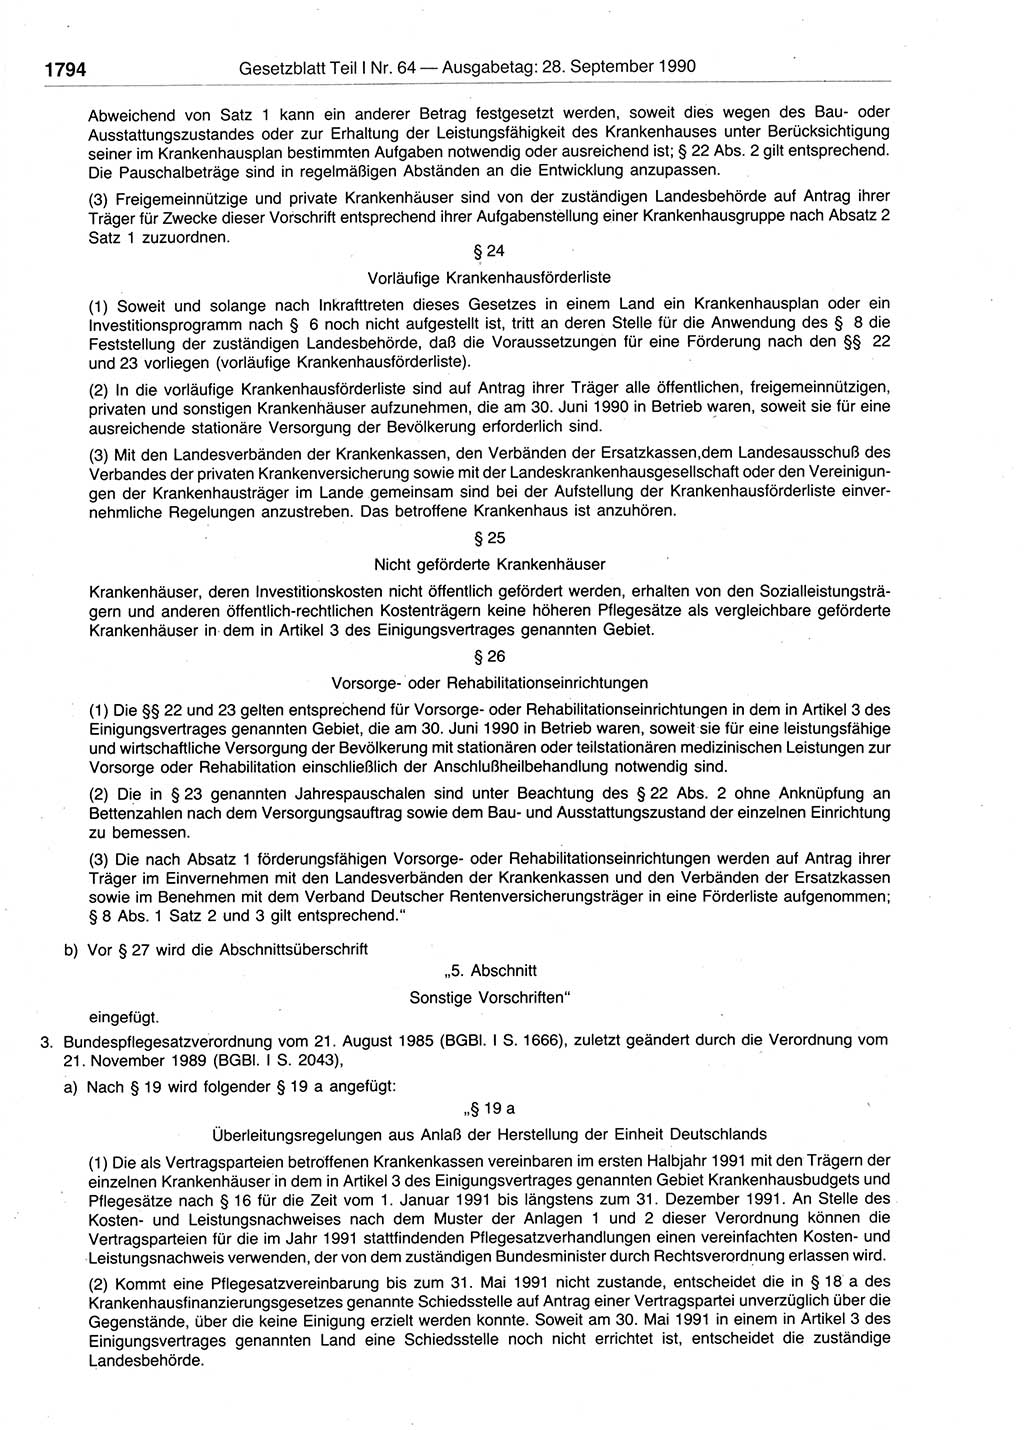 Gesetzblatt (GBl.) der Deutschen Demokratischen Republik (DDR) Teil Ⅰ 1990, Seite 1794 (GBl. DDR Ⅰ 1990, S. 1794)